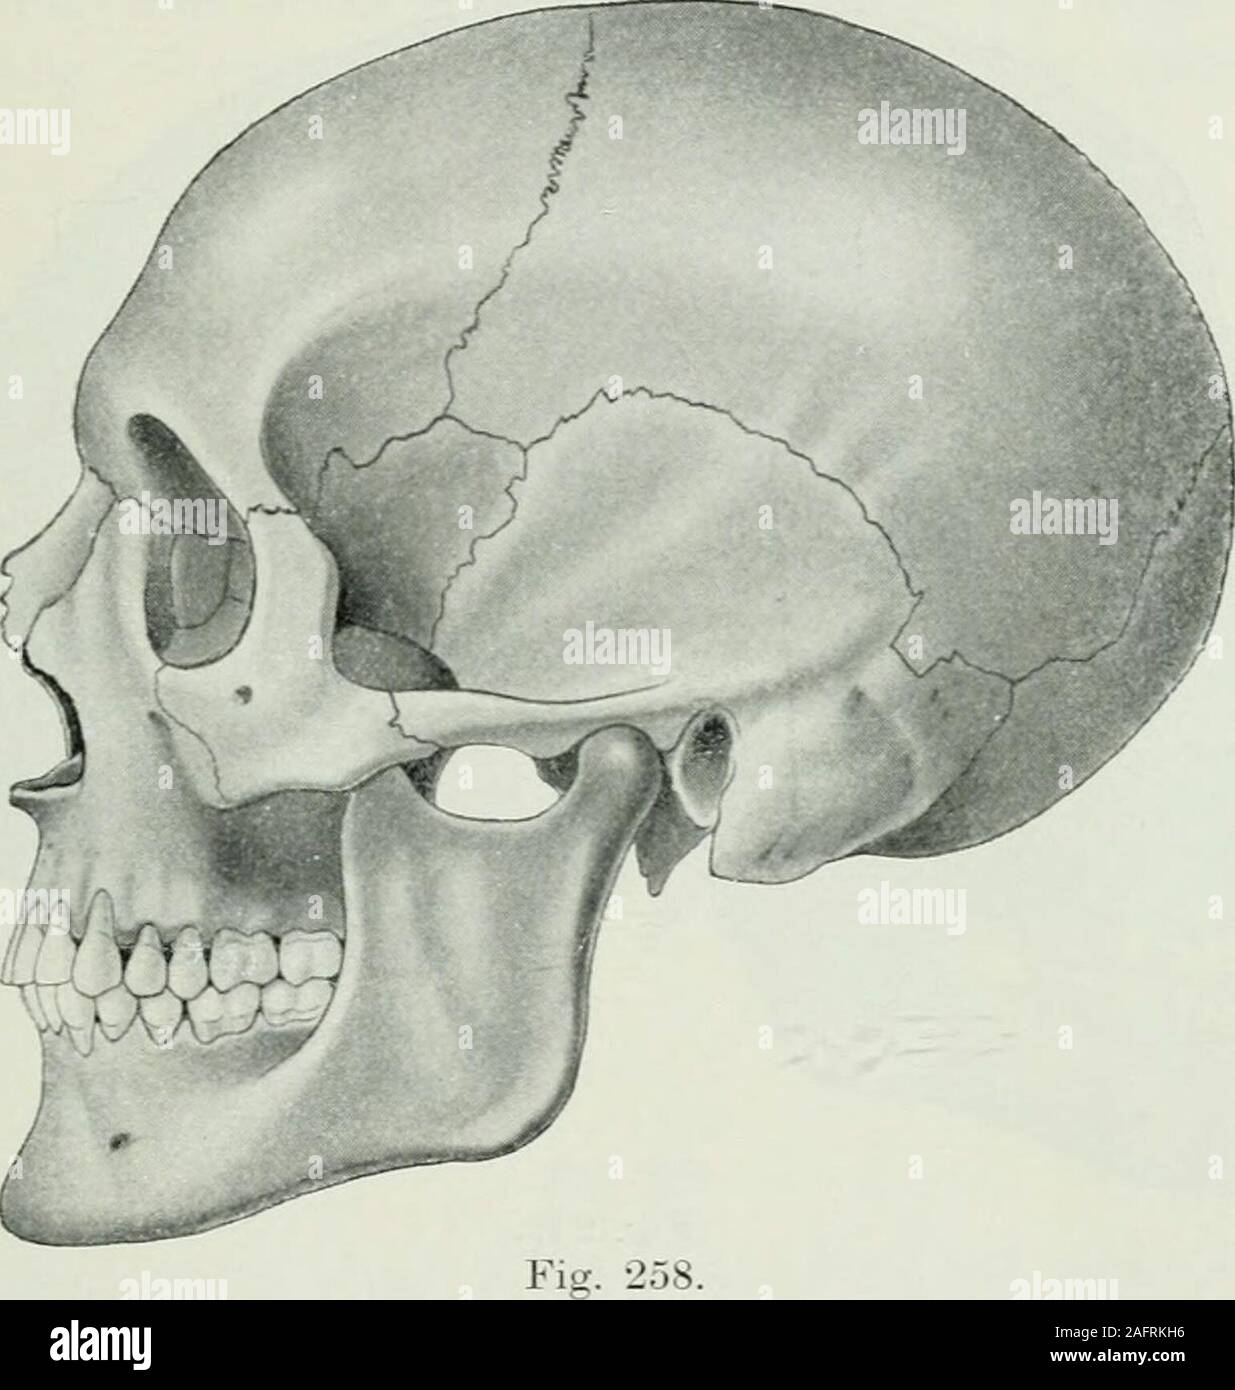 . Lehrbuch der orthodontie fur studierende und zahnartze enschluss mit der Geschichte der orthodontie. sgesetzt,daß der Mangel un Proportionalität in der Größe oder Formder Kieferknochen die Folge schlechter Zahnstellung ist. Einfluß der Zähne auf die Form des Gesichts-schädels. Daß die Entwicklung des Gebisses von unverkenn-barem Einfluß auf die Form des Gesichtsschädels ist, sieht manbesonders bei einem Vergleich des Schädels eines Neugeborenen(Fig. 257) mit dem eines Erwachsenen (Fig. 258) einerseits und die Notwendigkeit künstlerischer und anthropologischer Studien RSU. 265 dem etwa eines Foto Stock